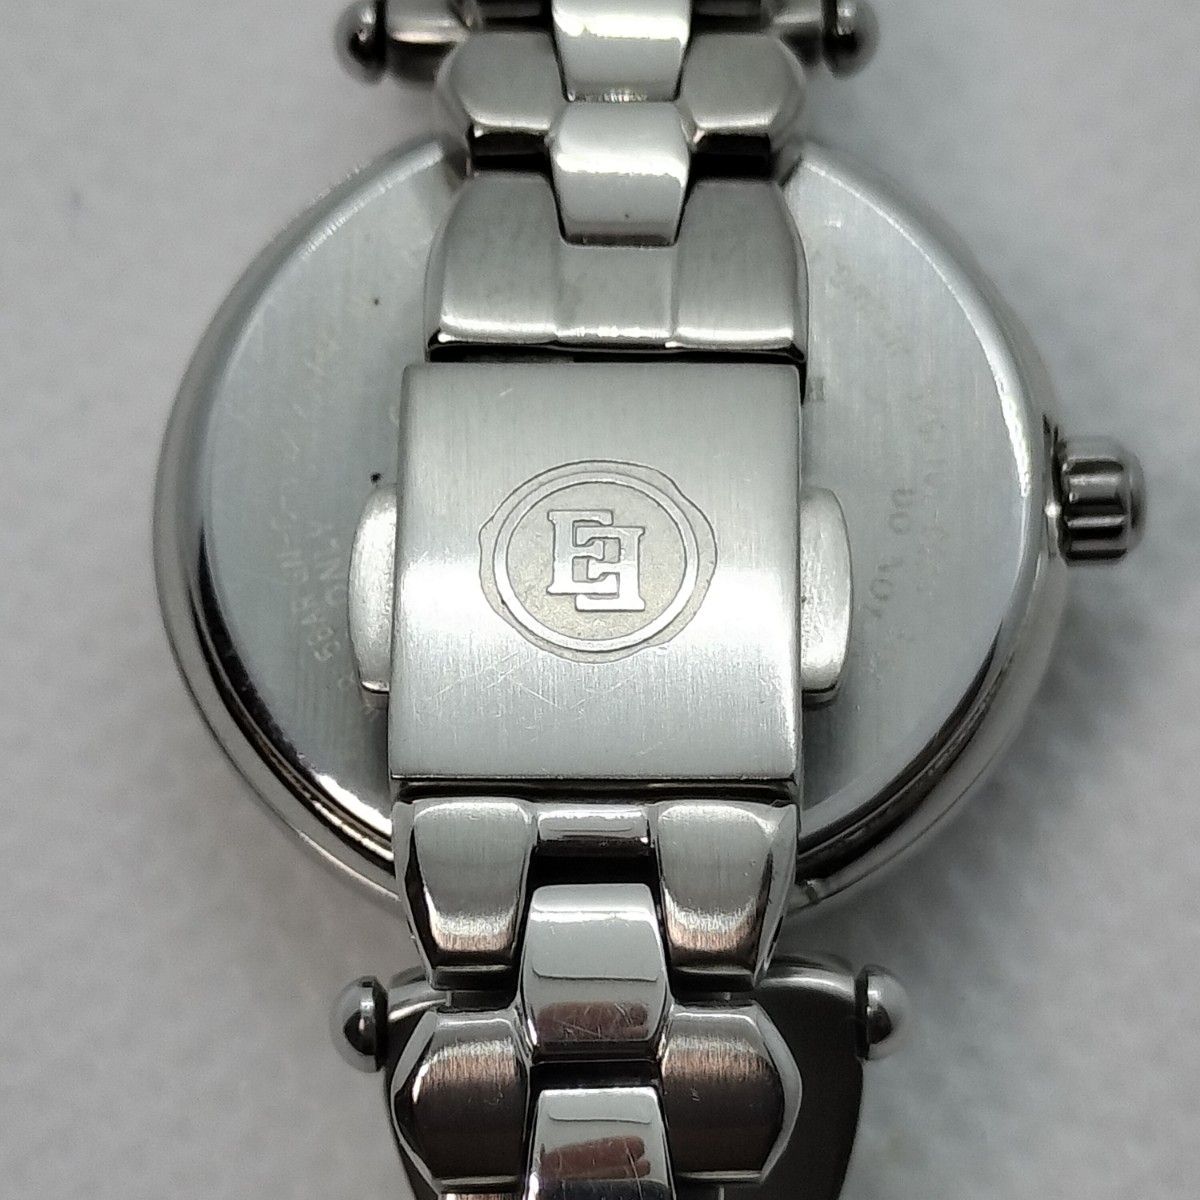 CITIZENシチズンエクシードEBD75-5112箱保付きレディース腕時計